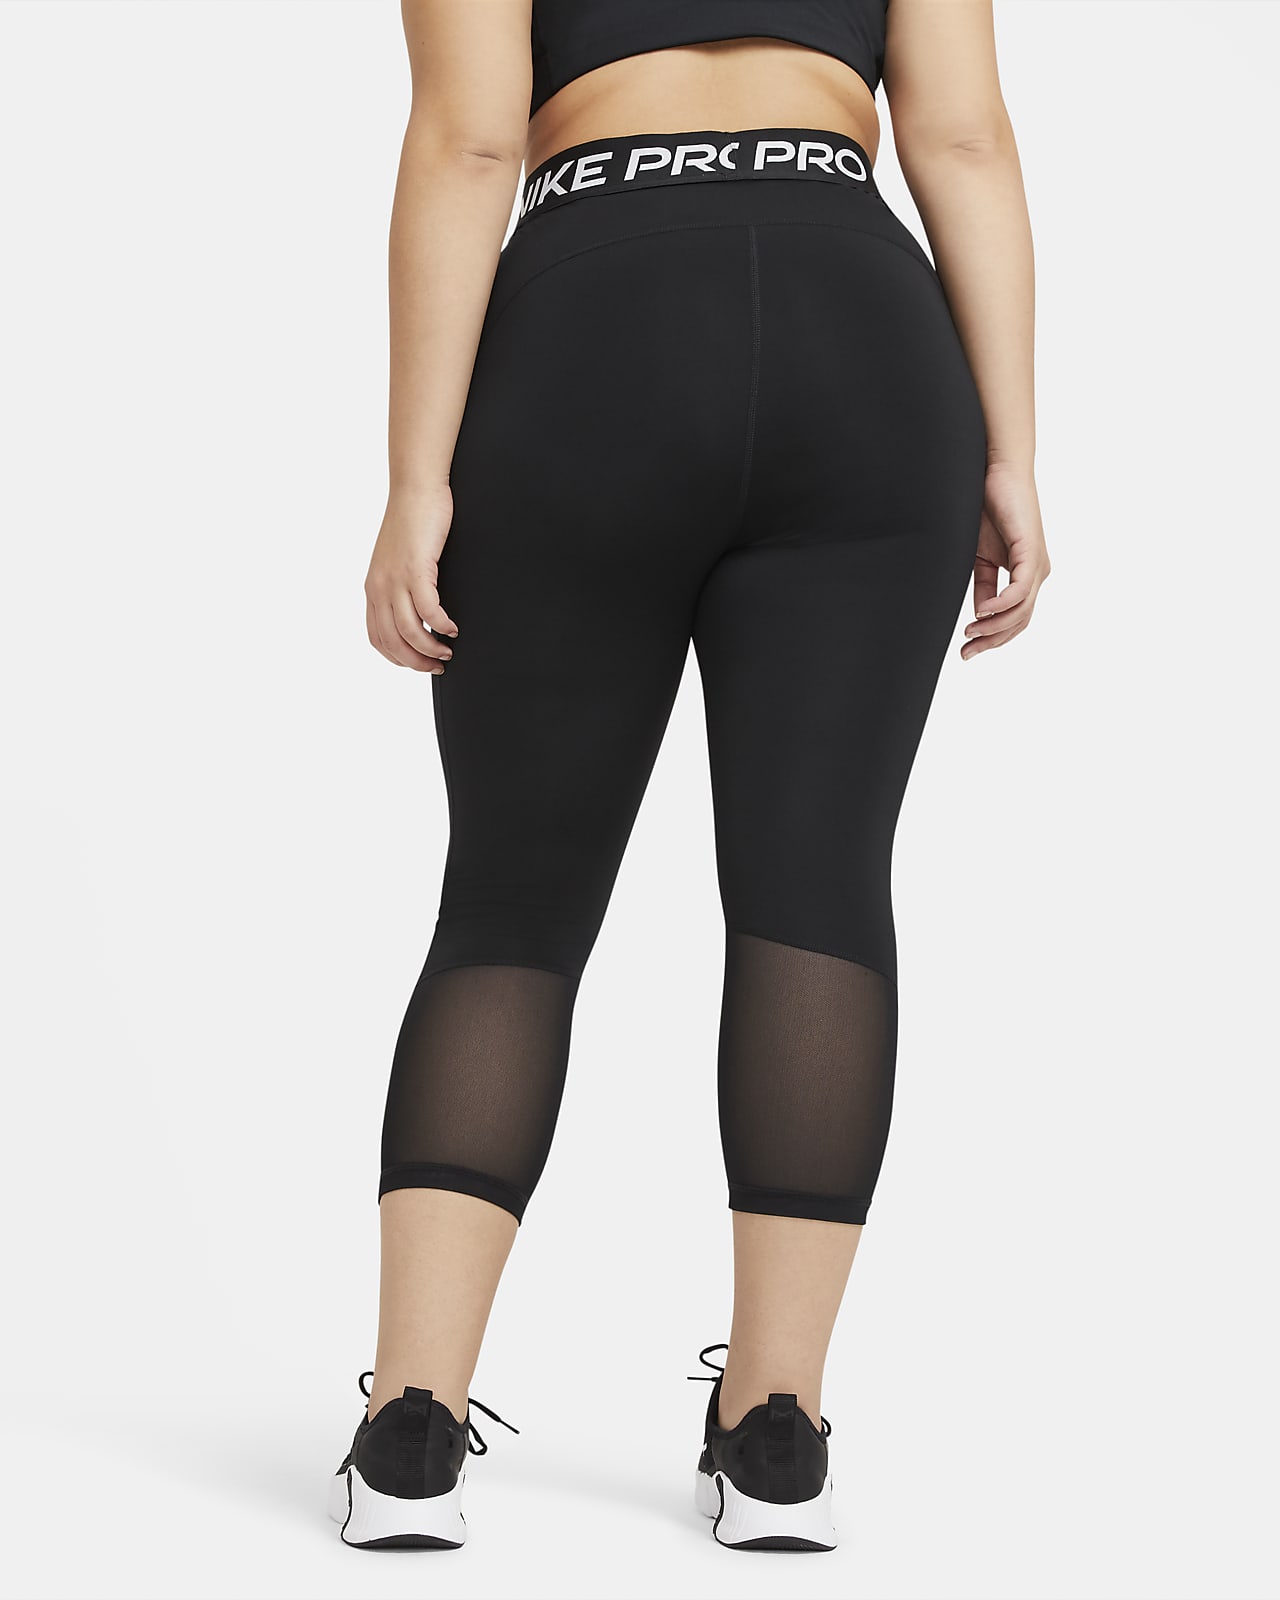 Nike Pro Crop-Leggings mit mittelhohem Bund für Damen (große Größe)